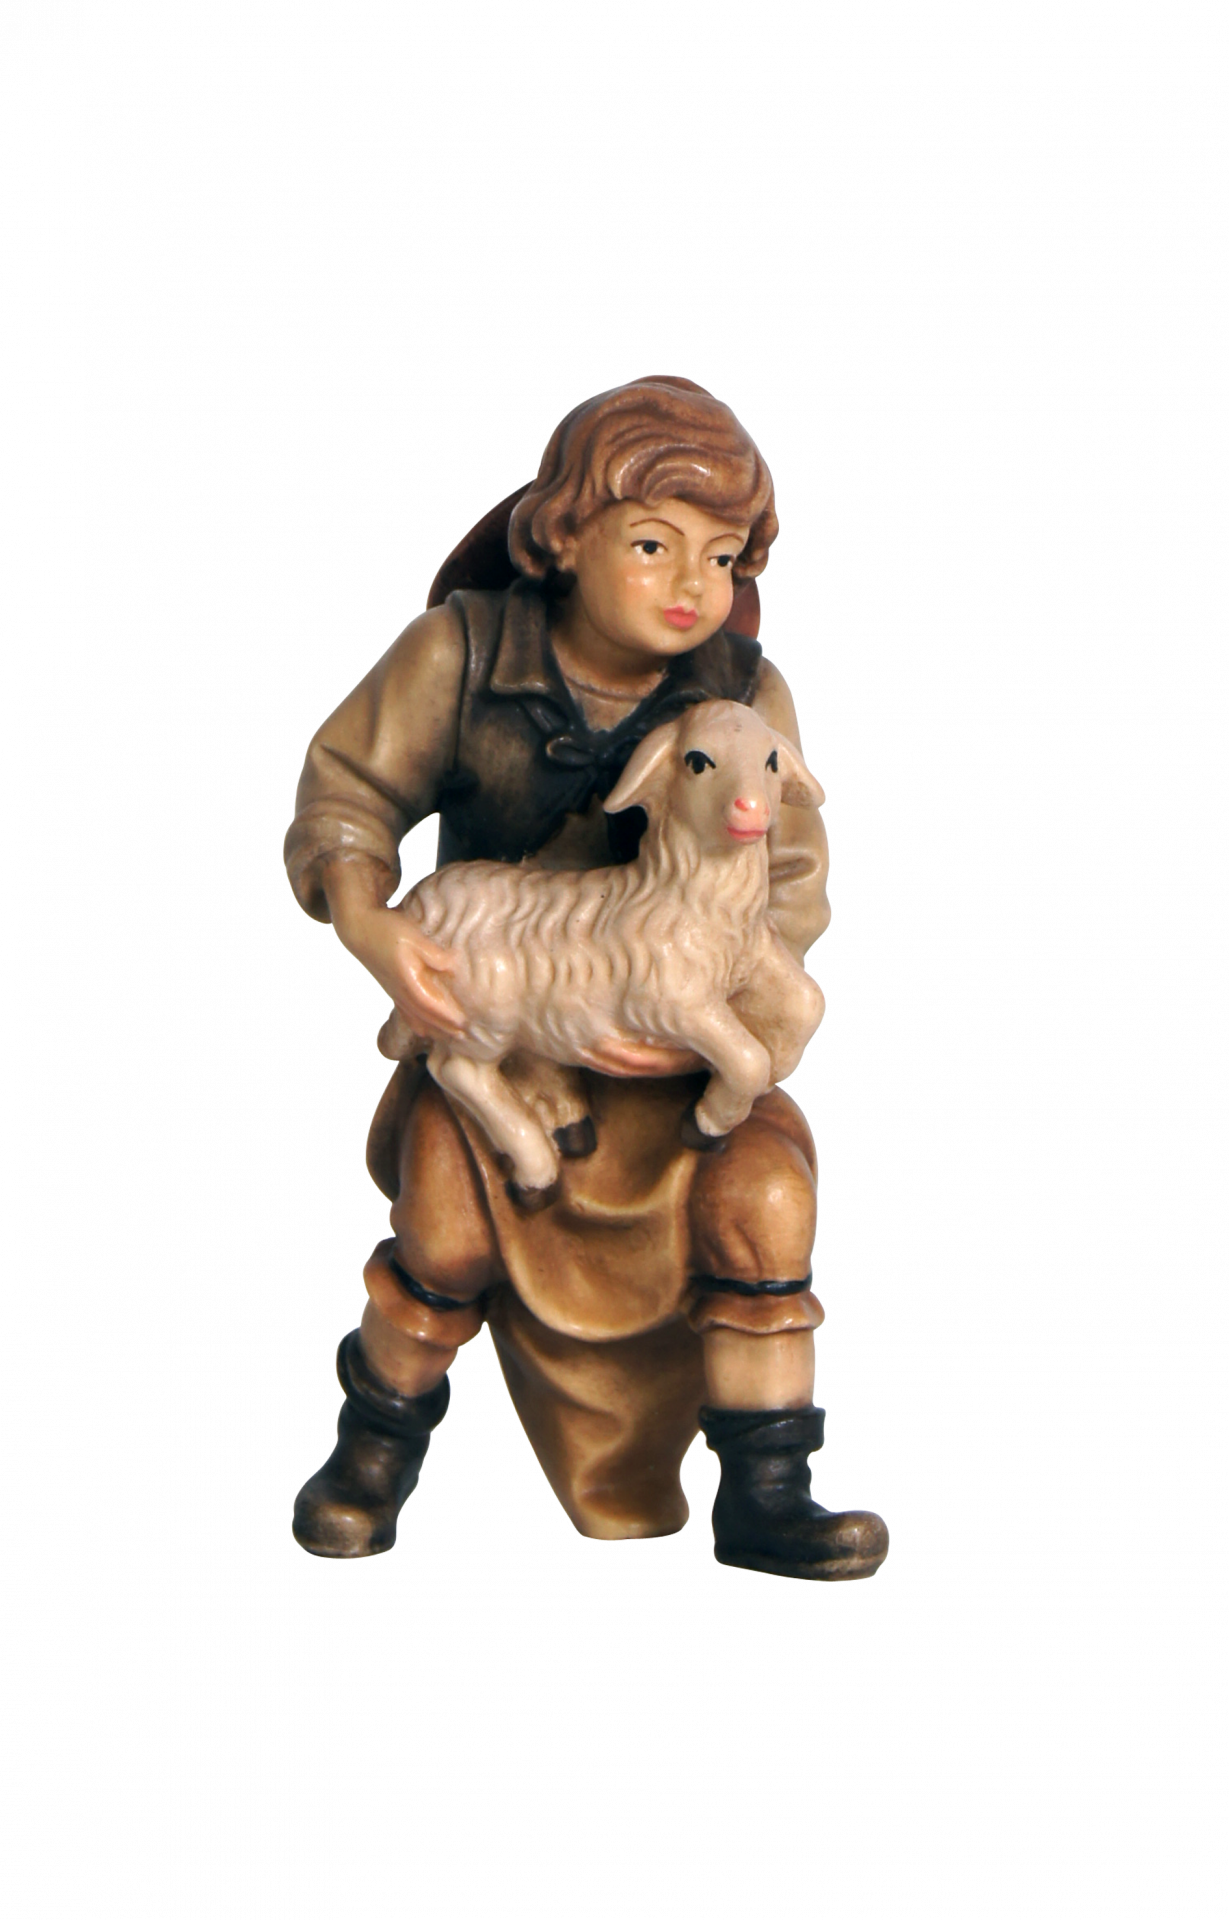 Presepe MahlknechtBambino con agnello in braccio